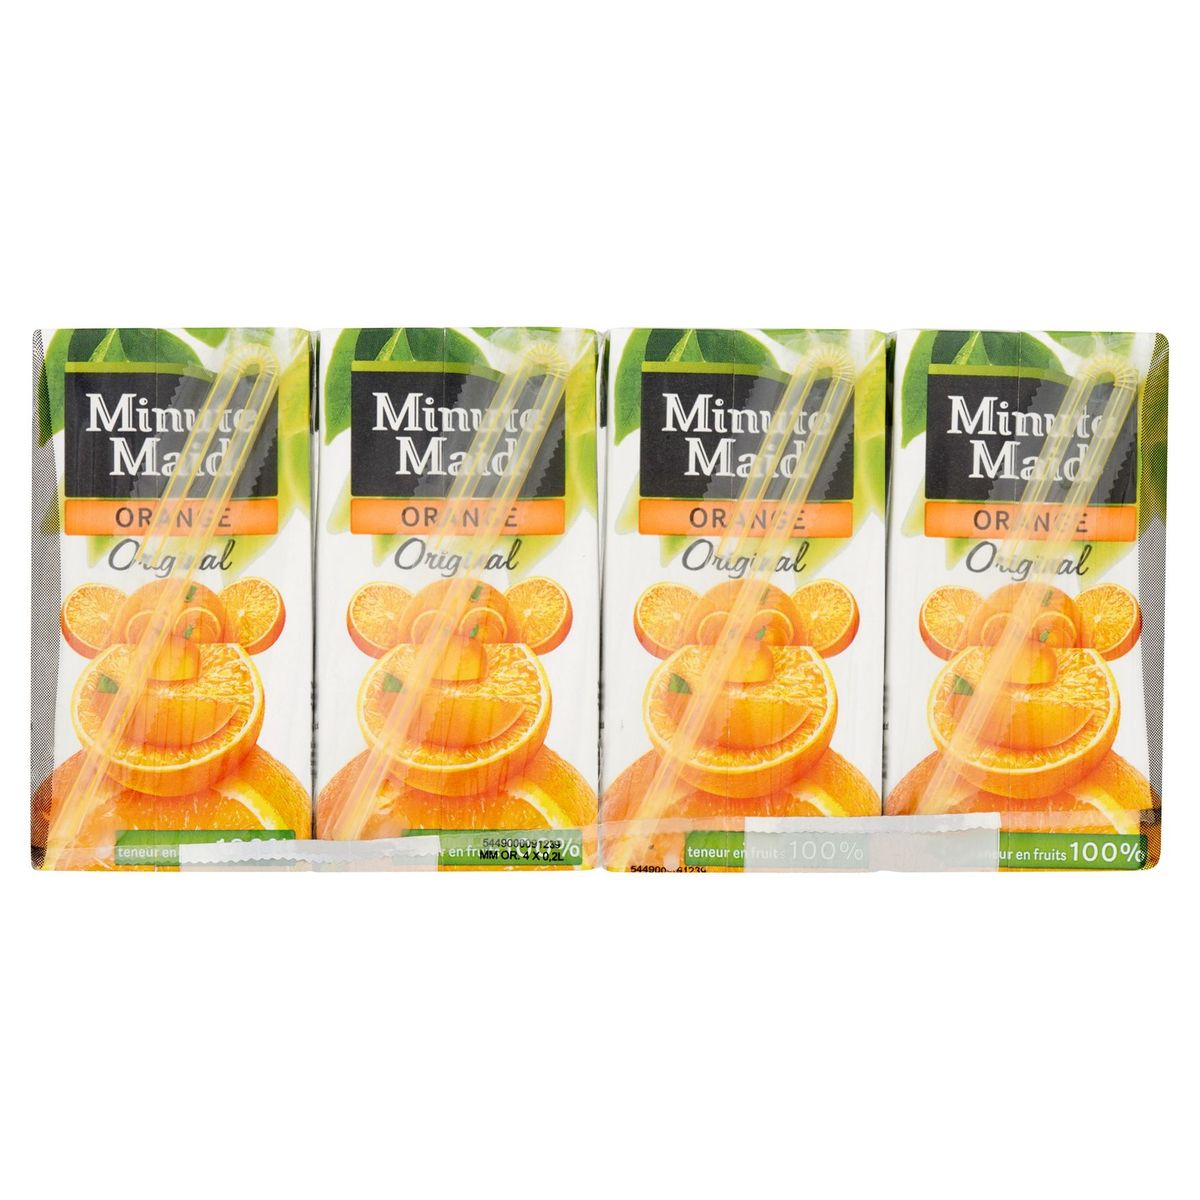 Minute Maid Sinaasappel Original 4 x 200 ml